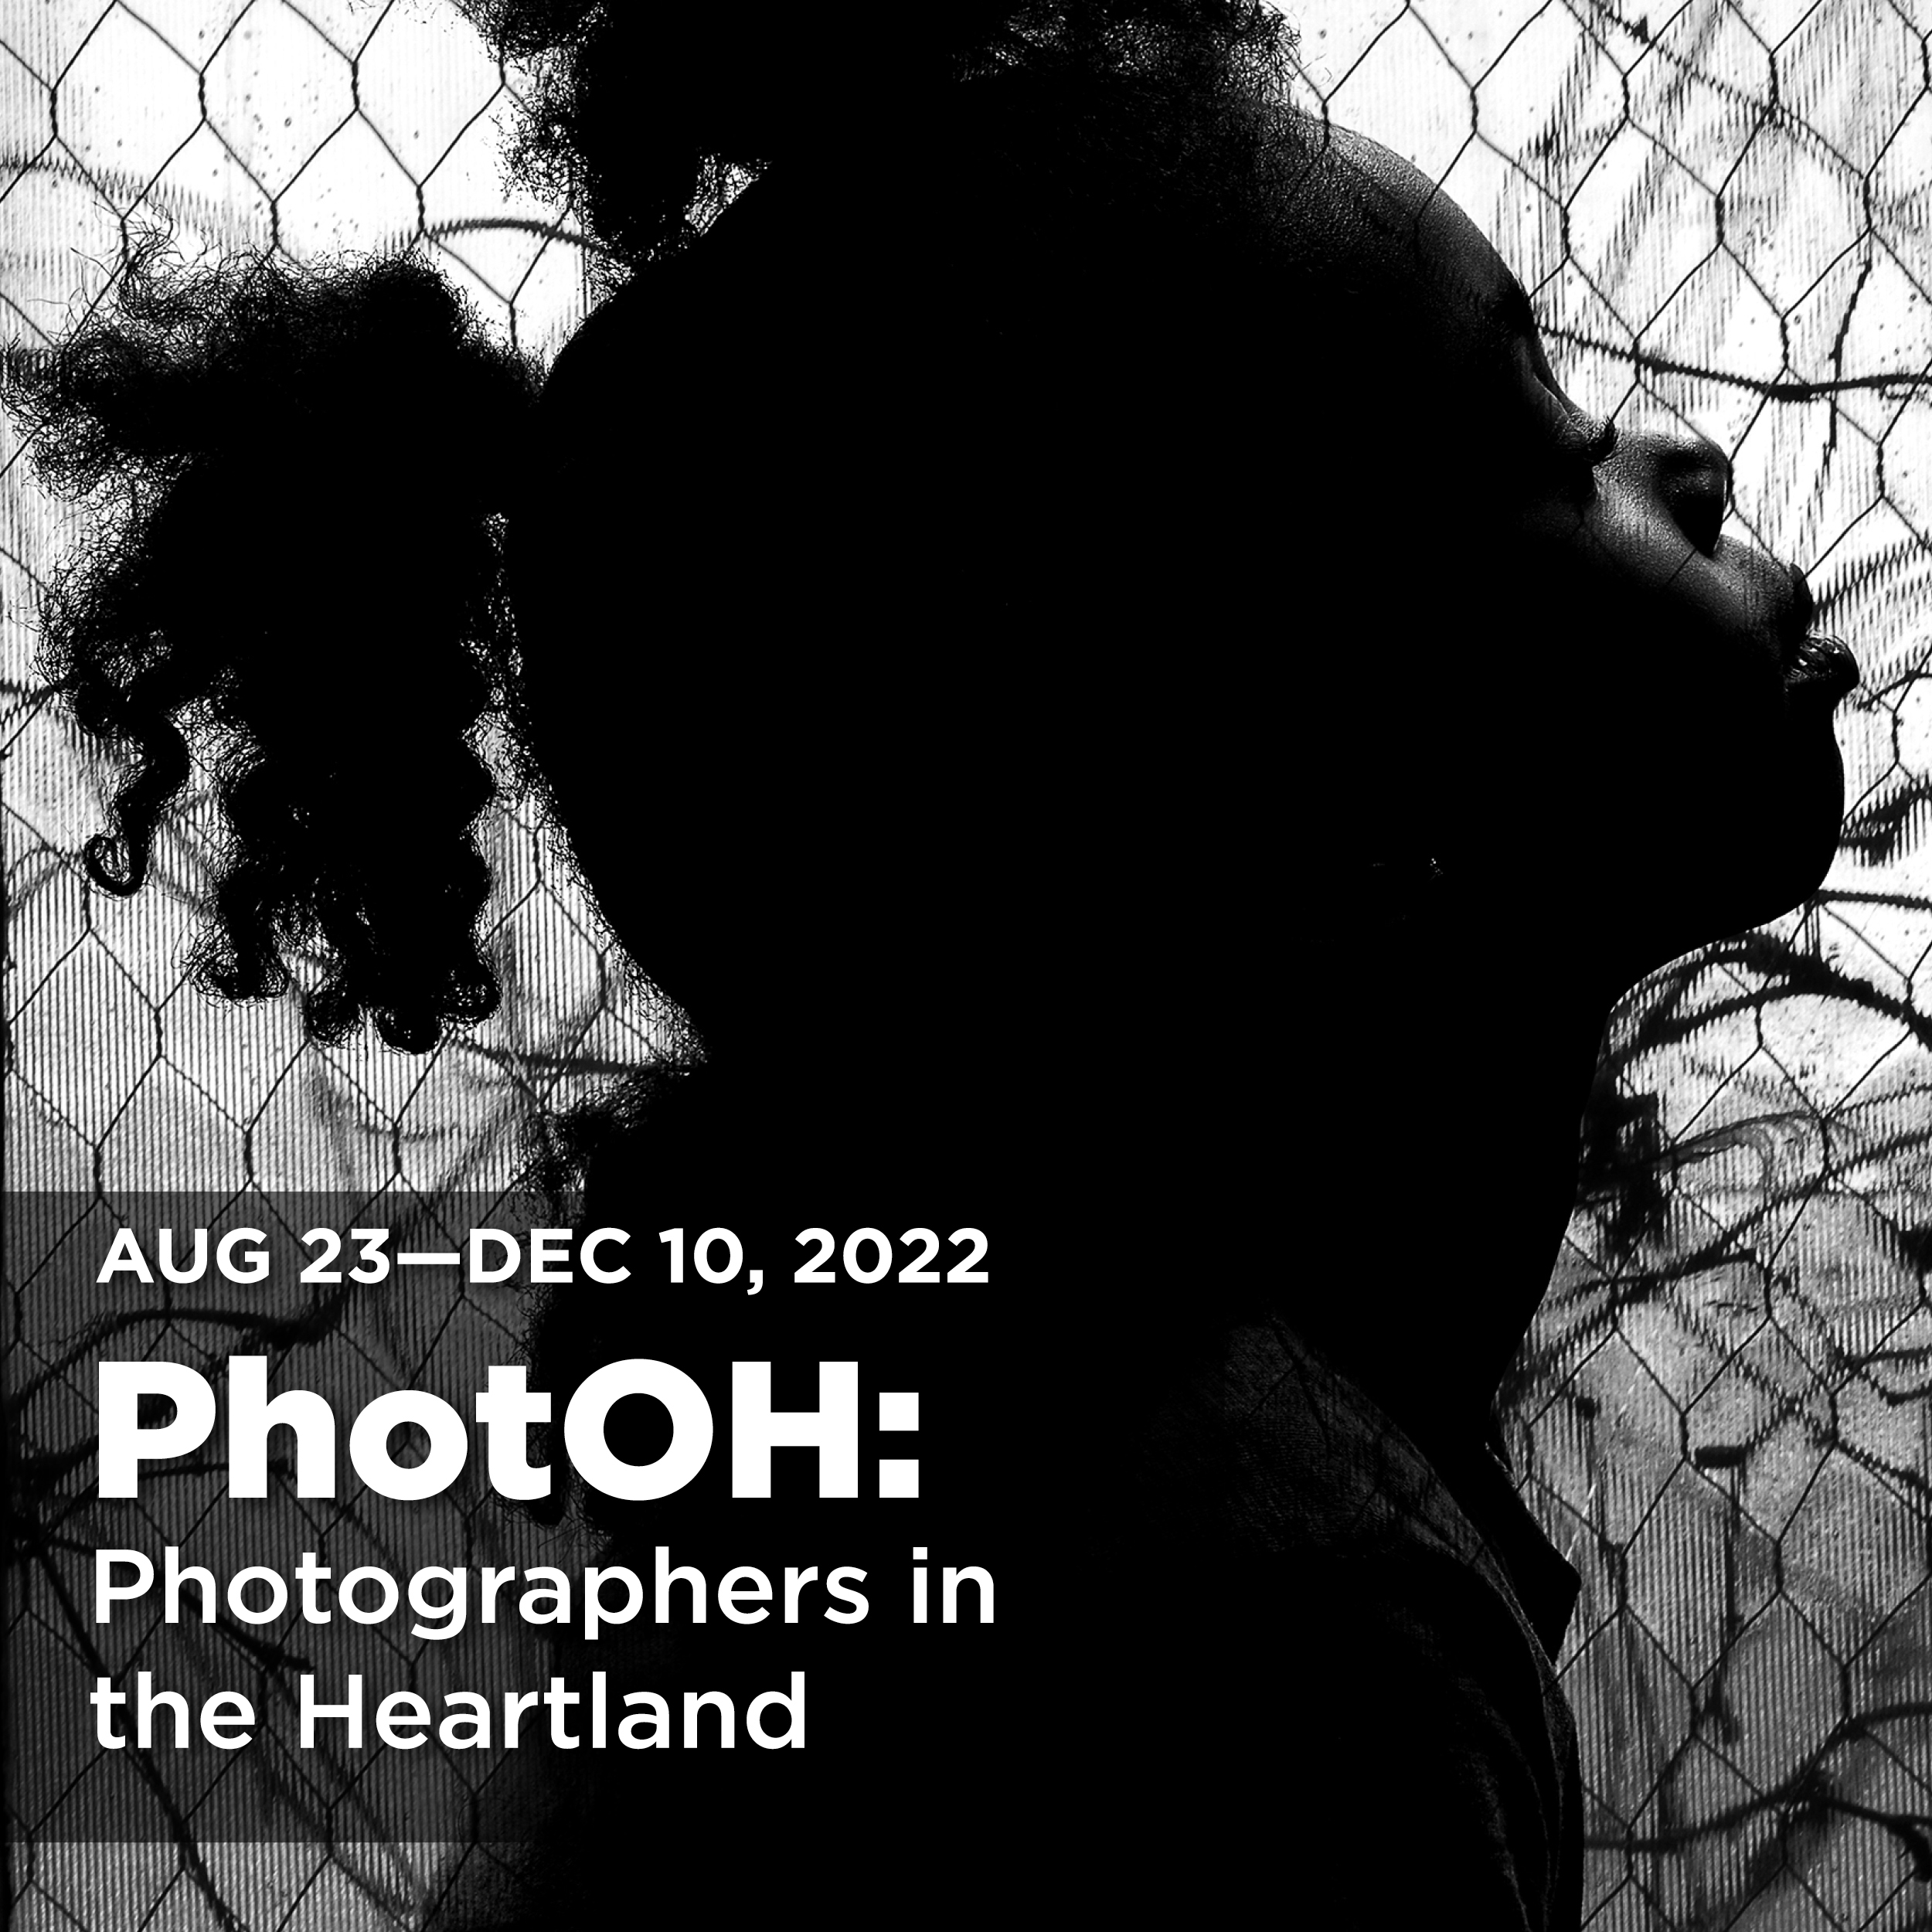 PhotOH Exhibition Aug 25-Dec 10